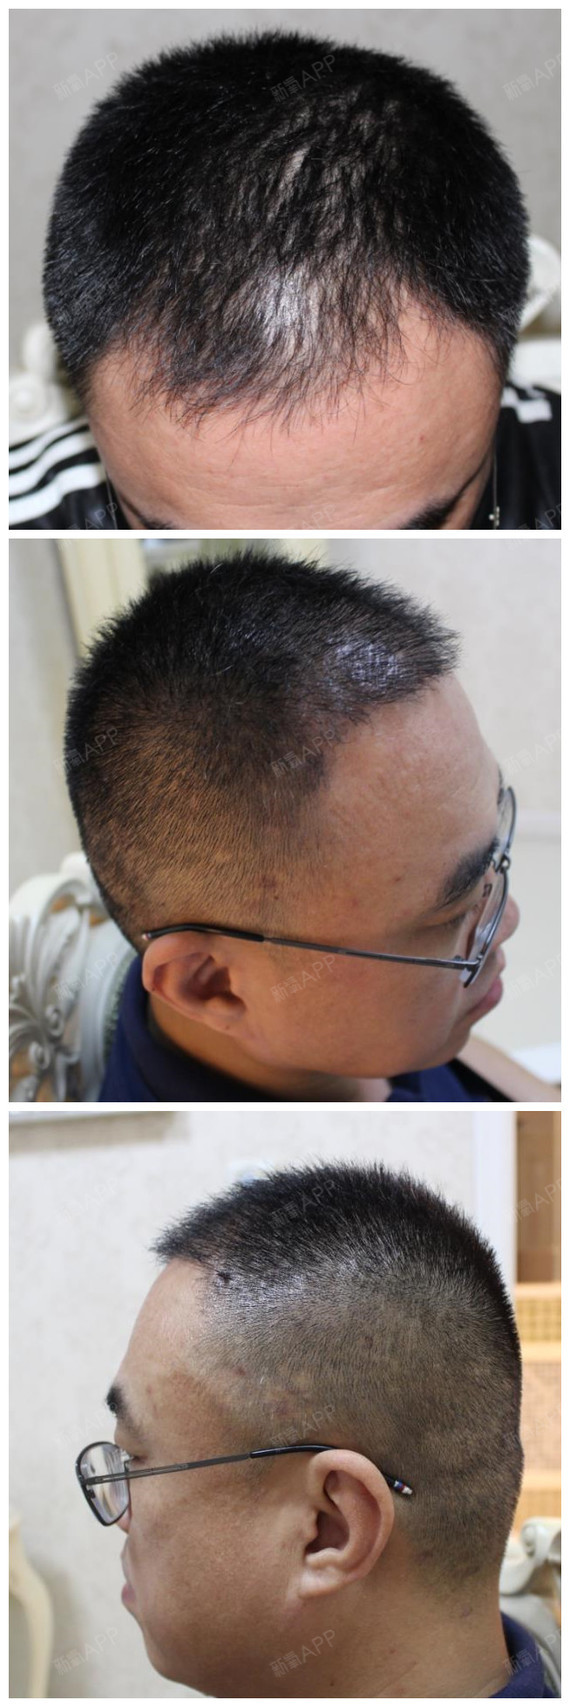 头发种植4个月左右的恢复情况,能看到种植的头发都长